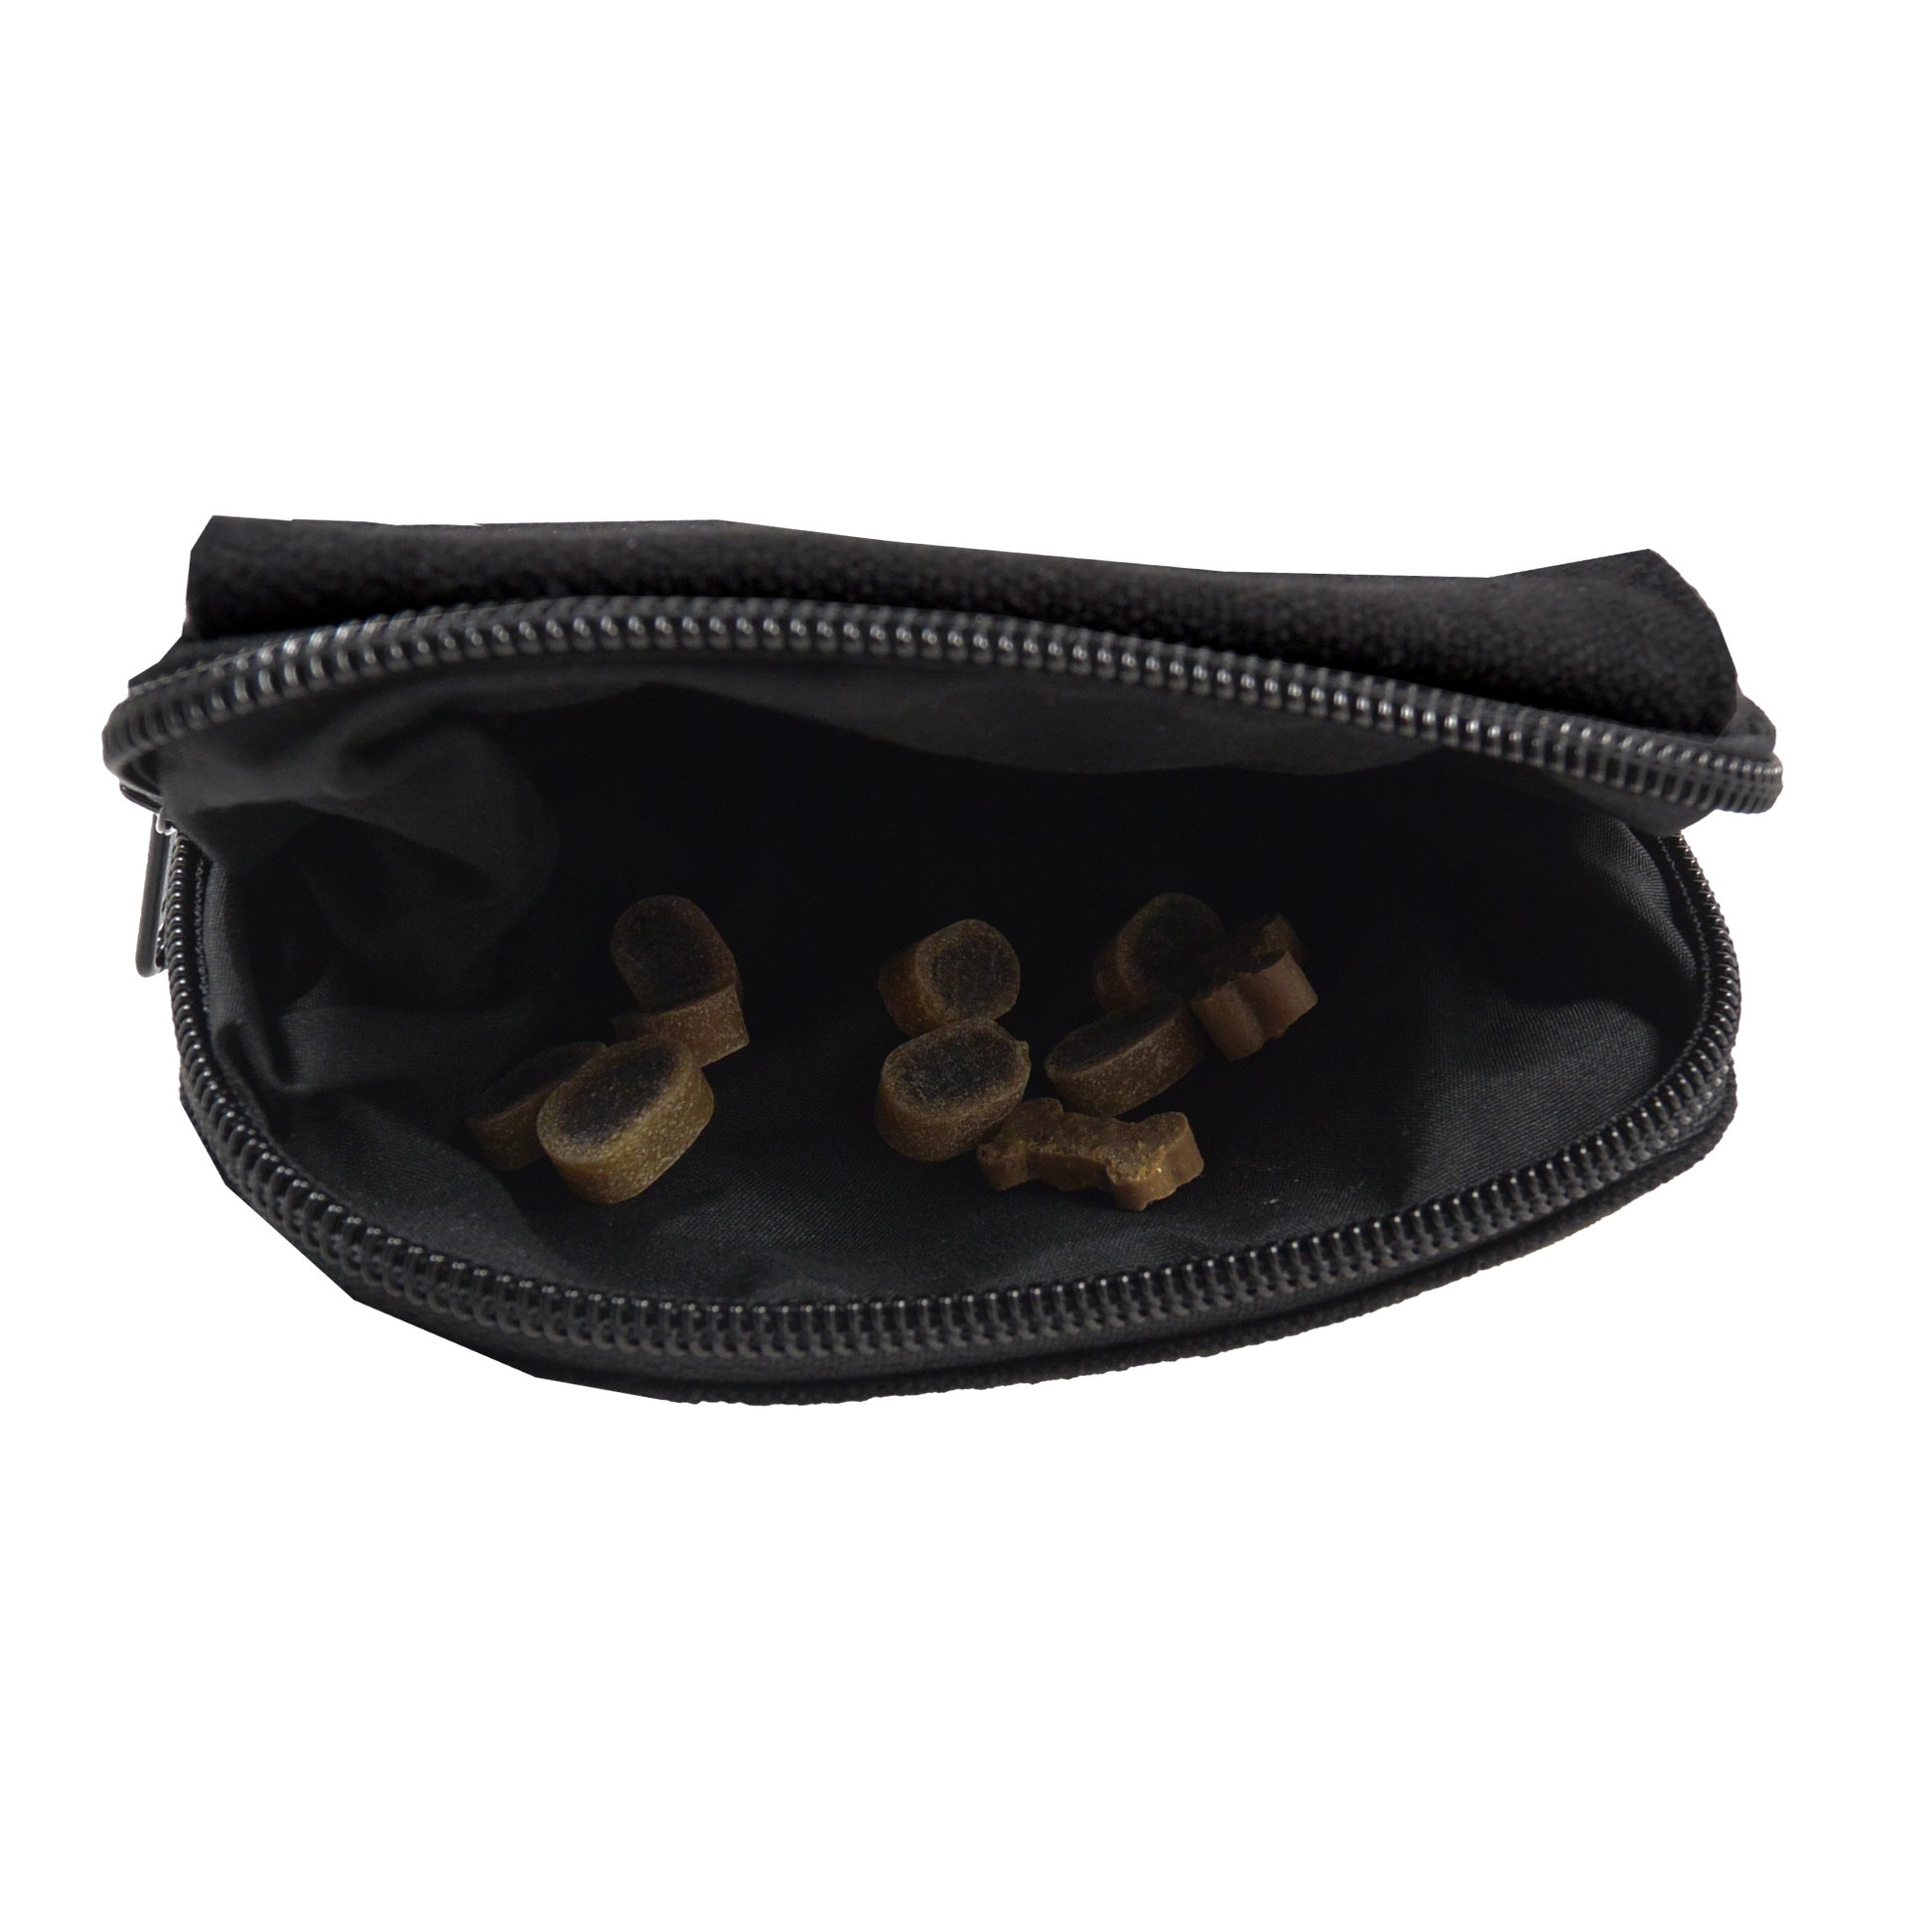 Beuteltasche schwarz mit zwei Gürtelschlaufen zum Anbringen an Gürtel mit einem extra auswaschbaren Leckerlifach.